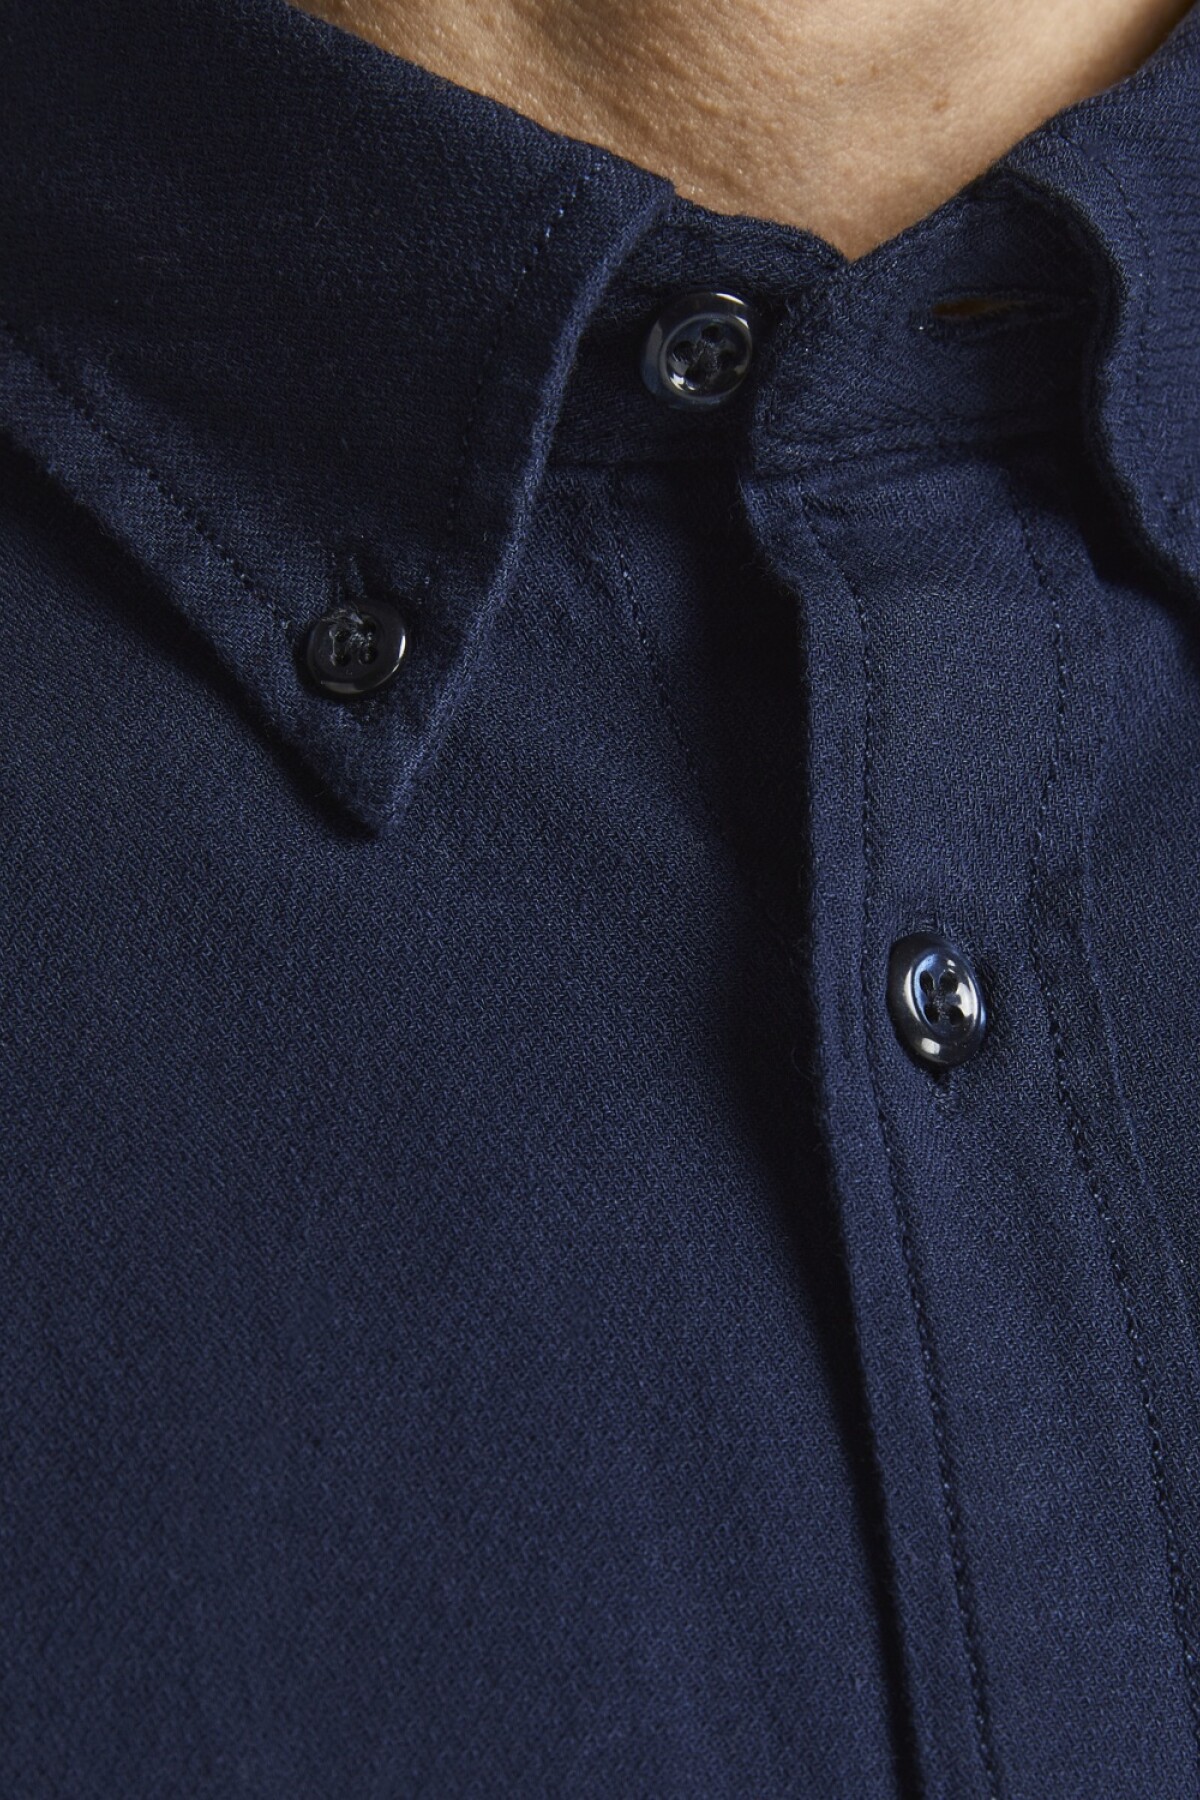 Camisa Mix Bolsillo De Plastrón Y Cuello Abotonado Navy Blazer